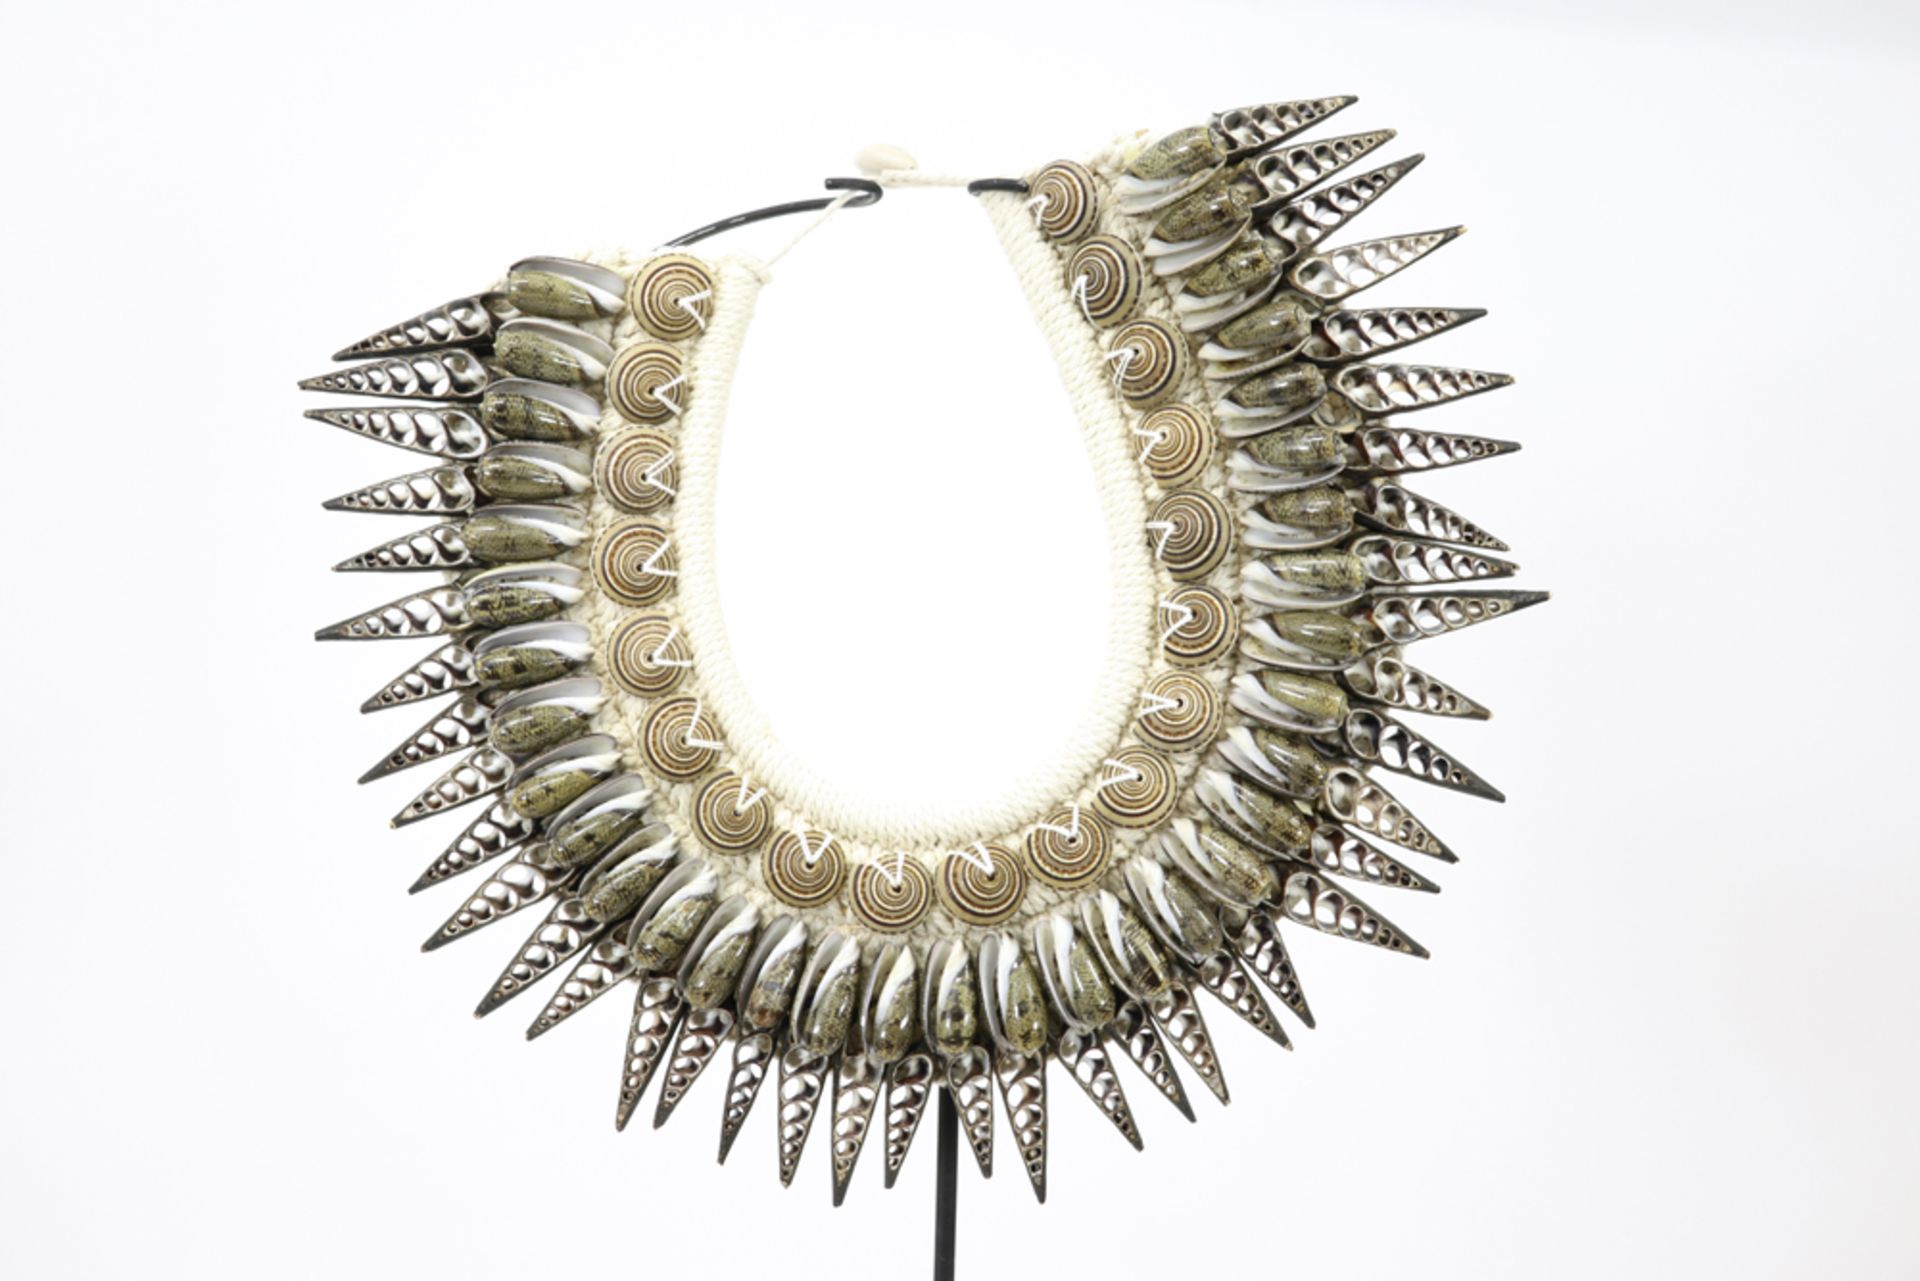 decorative necklace made with shells || Decoratieve halsband gemaakt met schelpen - gemonteerd